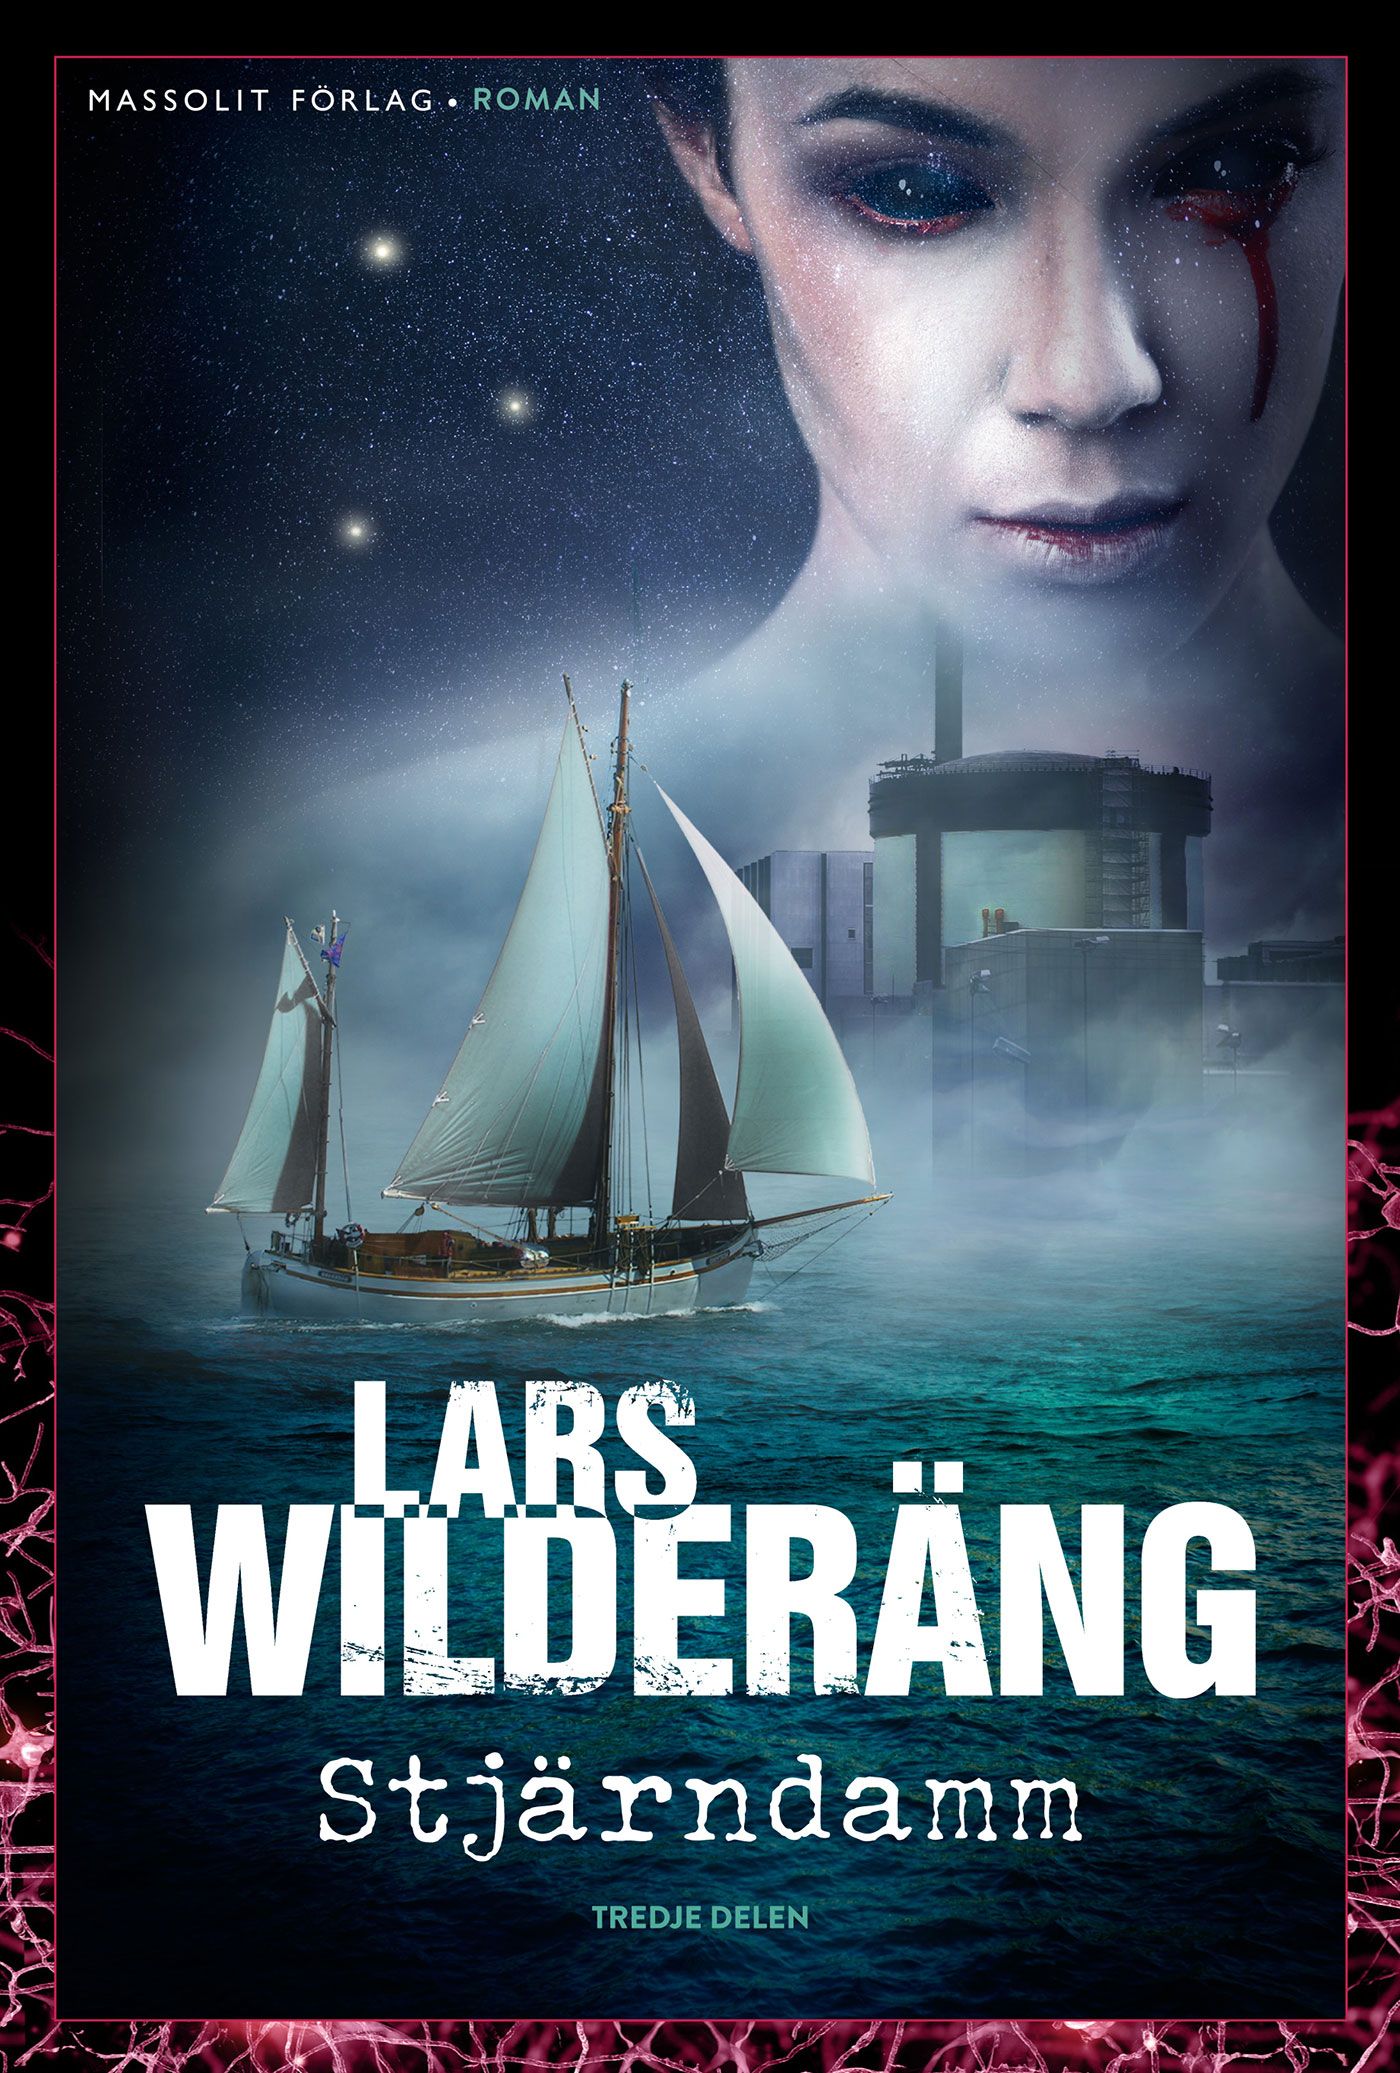 Stjärndamm, e-bok av Lars Wilderäng